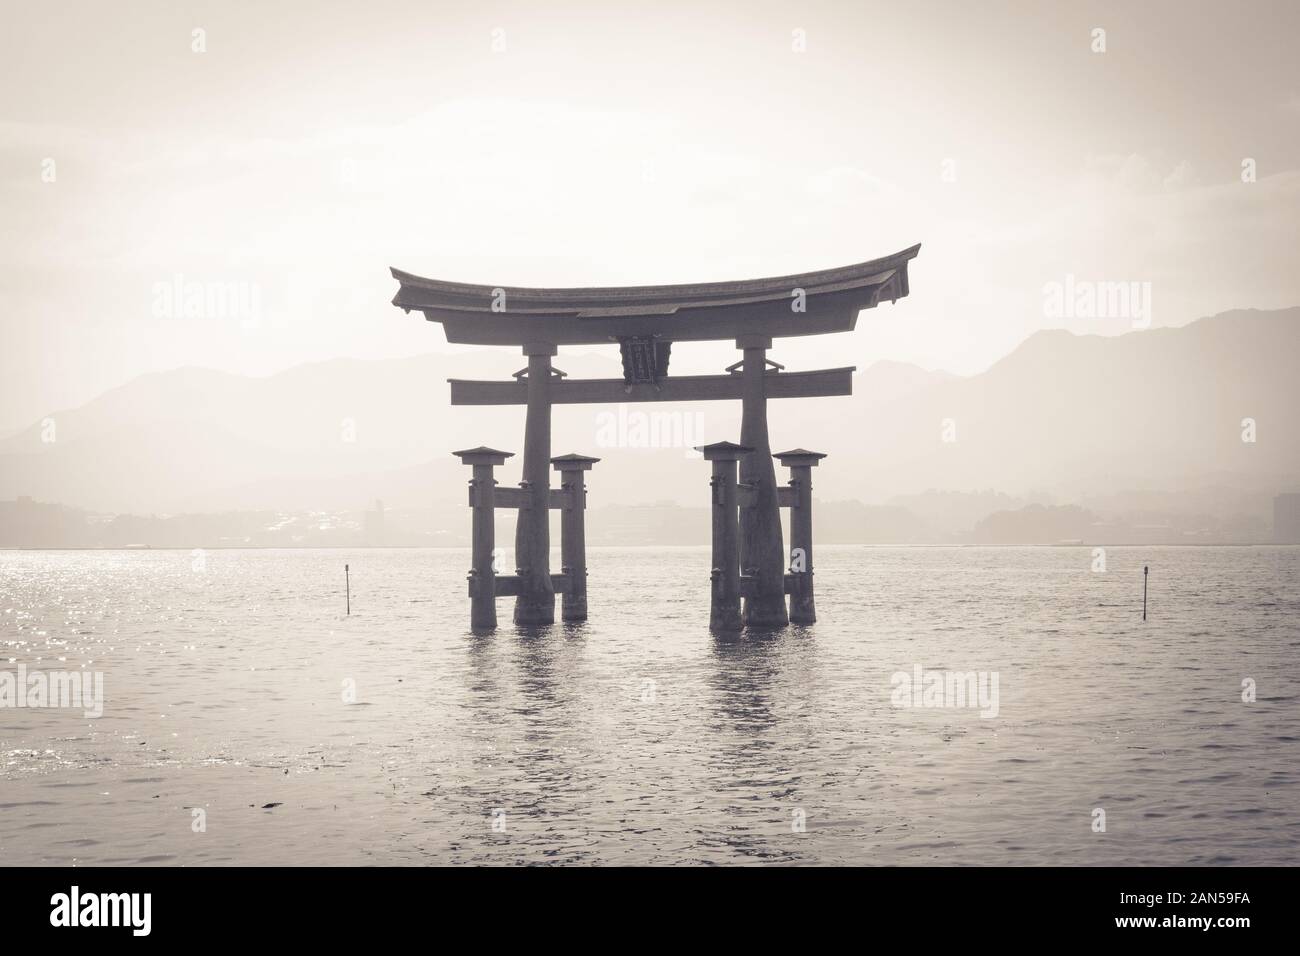 Black-and-white floating torii gate of Itsukushima Shrine (Itsukushima-jinja) on the island of Miyajima (Itsukushima) in Hiroshima Prefecture, Japan. Stock Photo